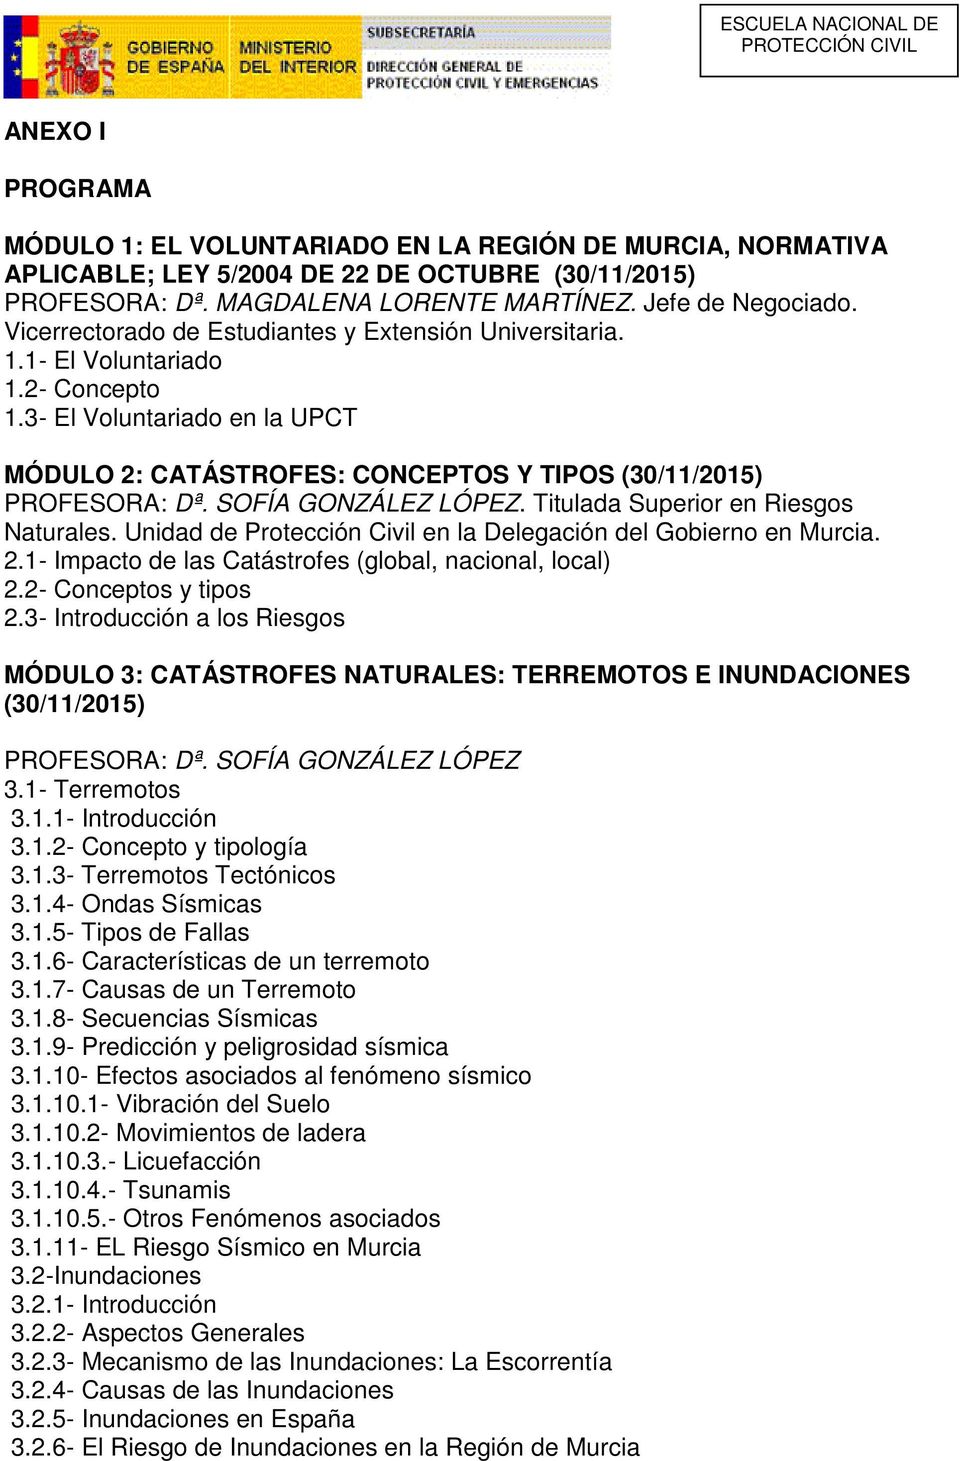 SOFÍA GONZÁLEZ LÓPEZ. Titulada Superior en Riesgos Naturales. Unidad de Protección Civil en la Delegación del Gobierno en Murcia. 2.1- Impacto de las Catástrofes (global, nacional, local) 2.